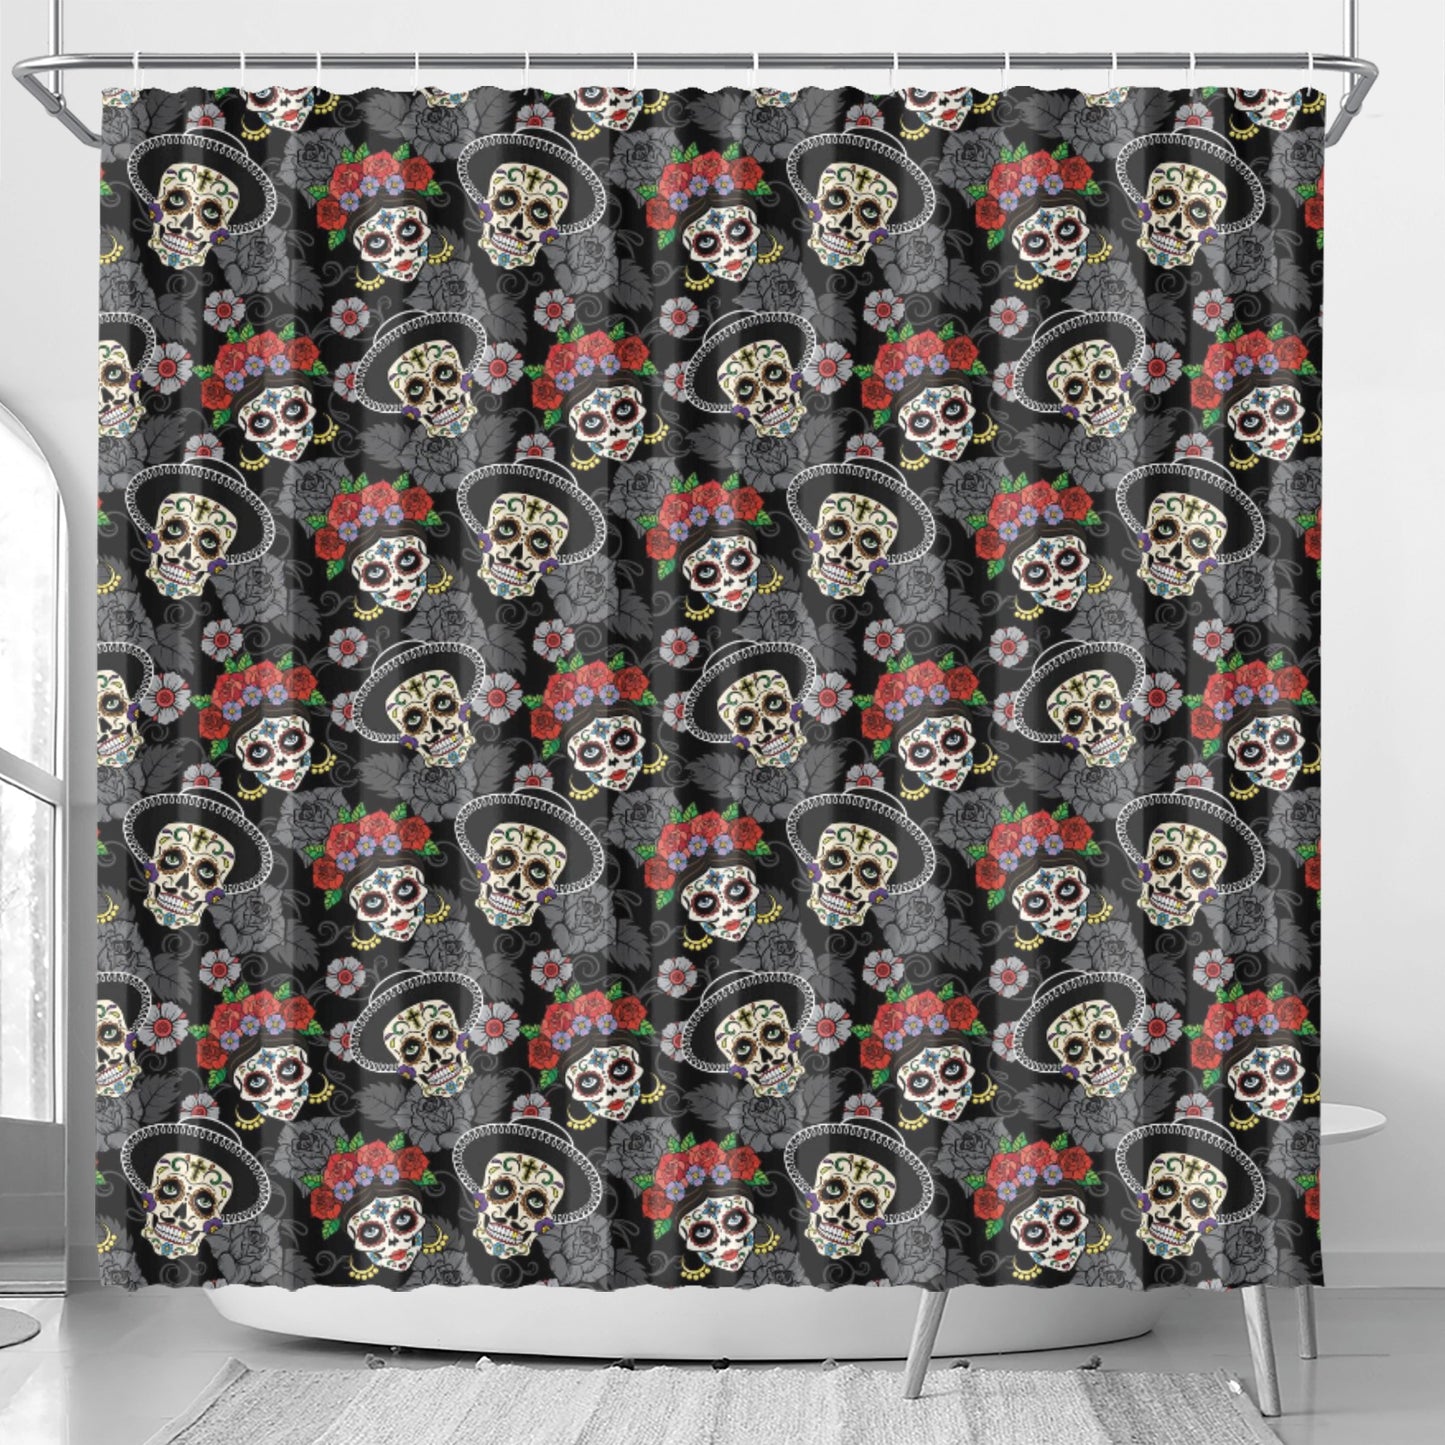 Rose skull floral sugar skull Shower Curtain